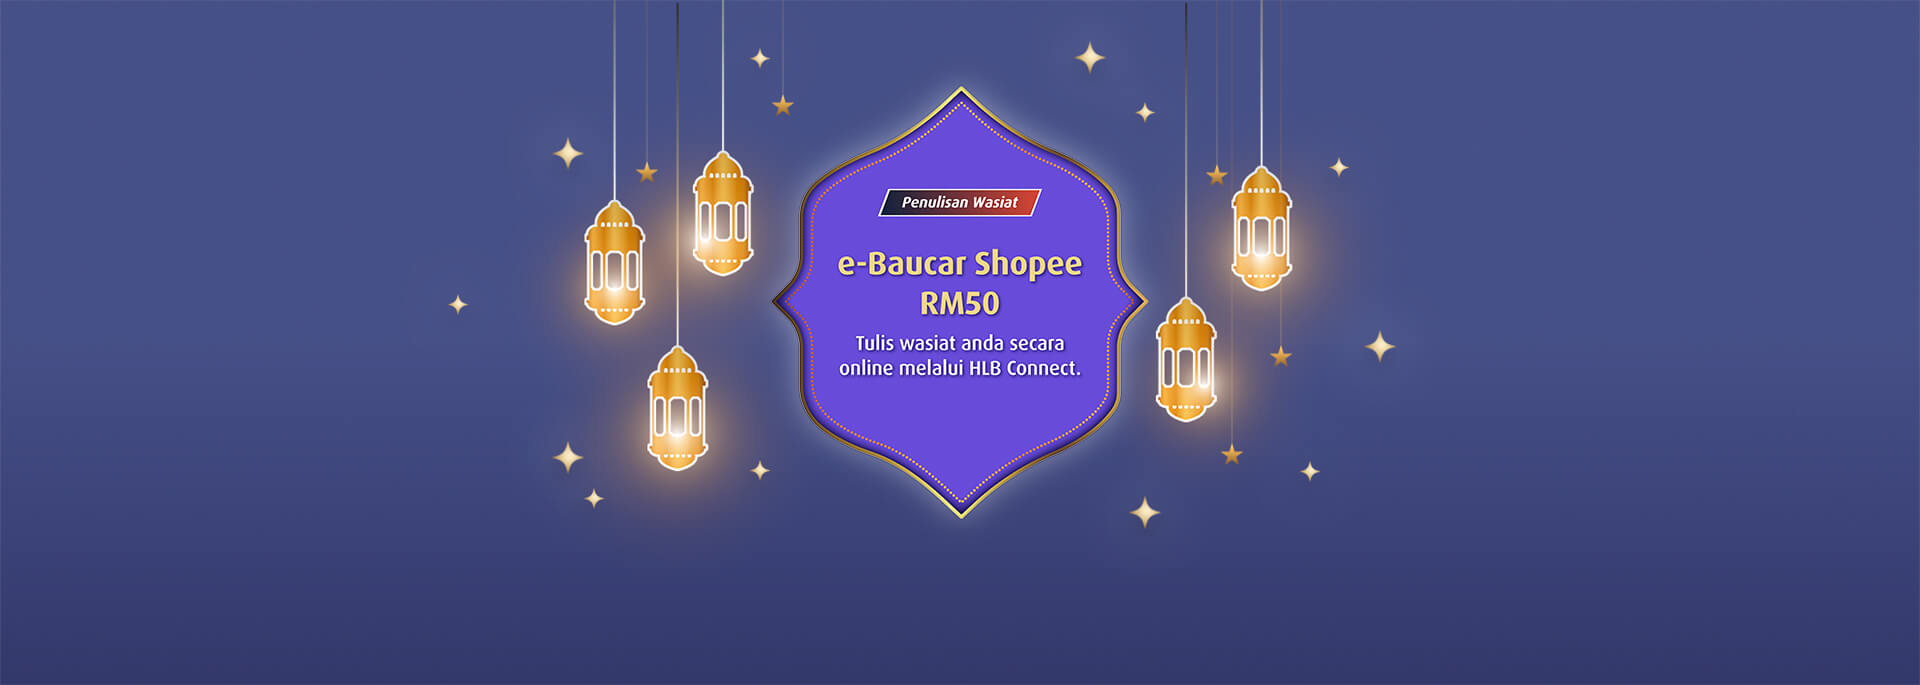 e-Baucar Shopee RM50 apabila anda mohon untuk perkhidmatan penulisan wasiat buat kali pertama